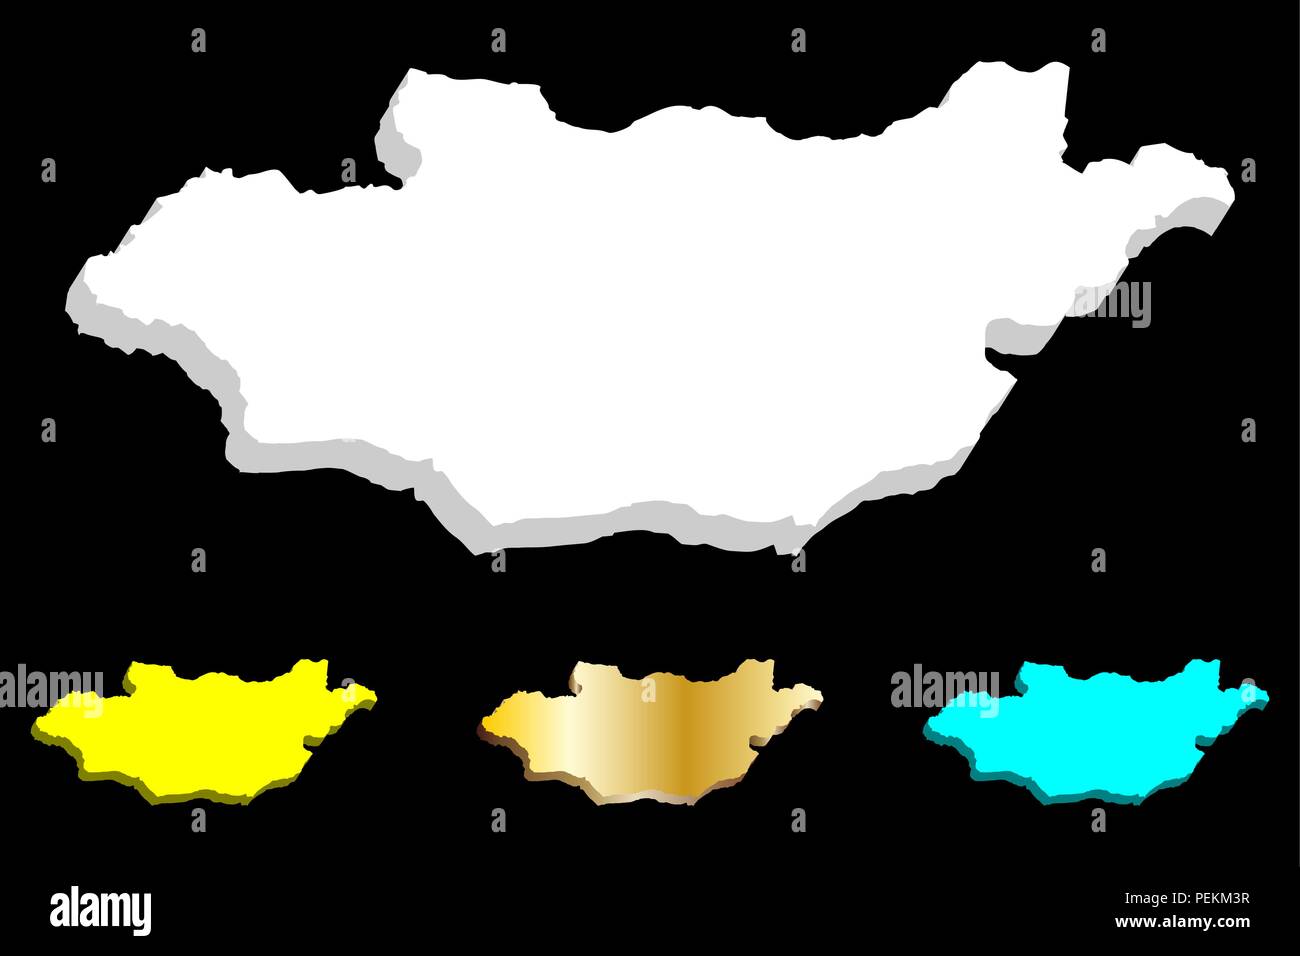 Carte 3D de la Mongolie Népal - blanc, jaune, bleu et or - vector illustration Illustration de Vecteur